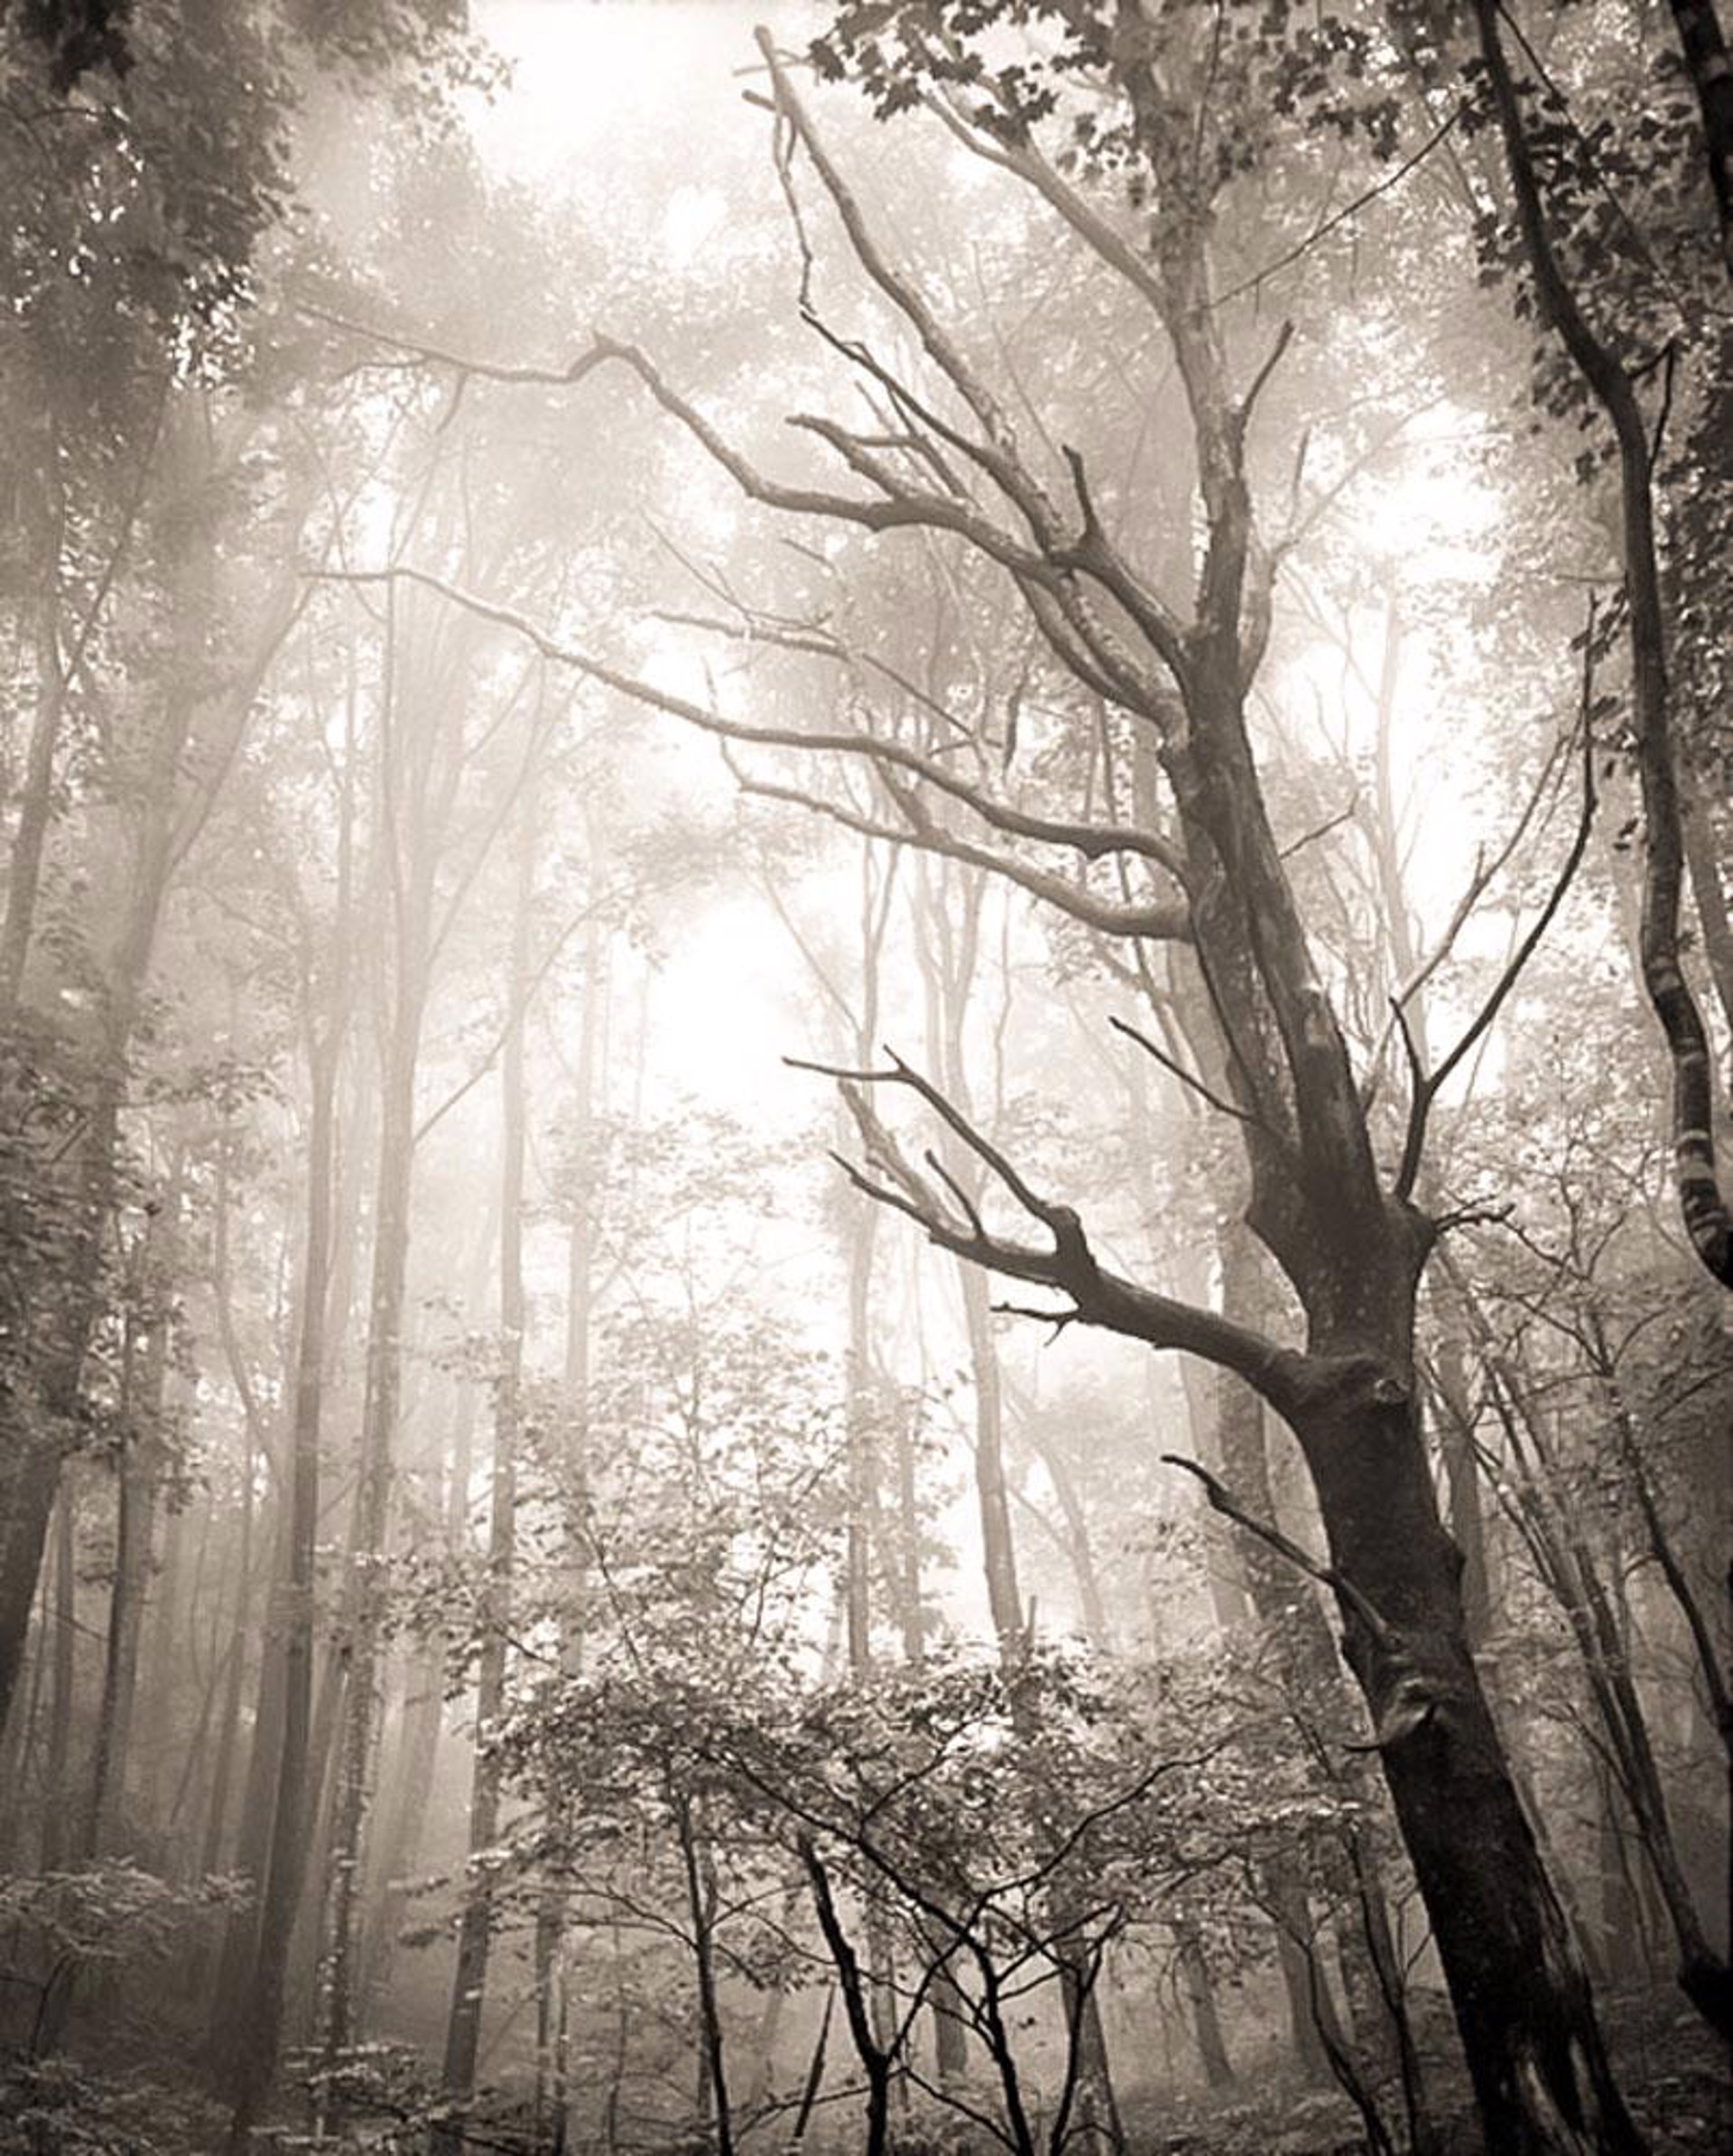 Dead Tree in Fog#10 17/21 by Frank Hunter